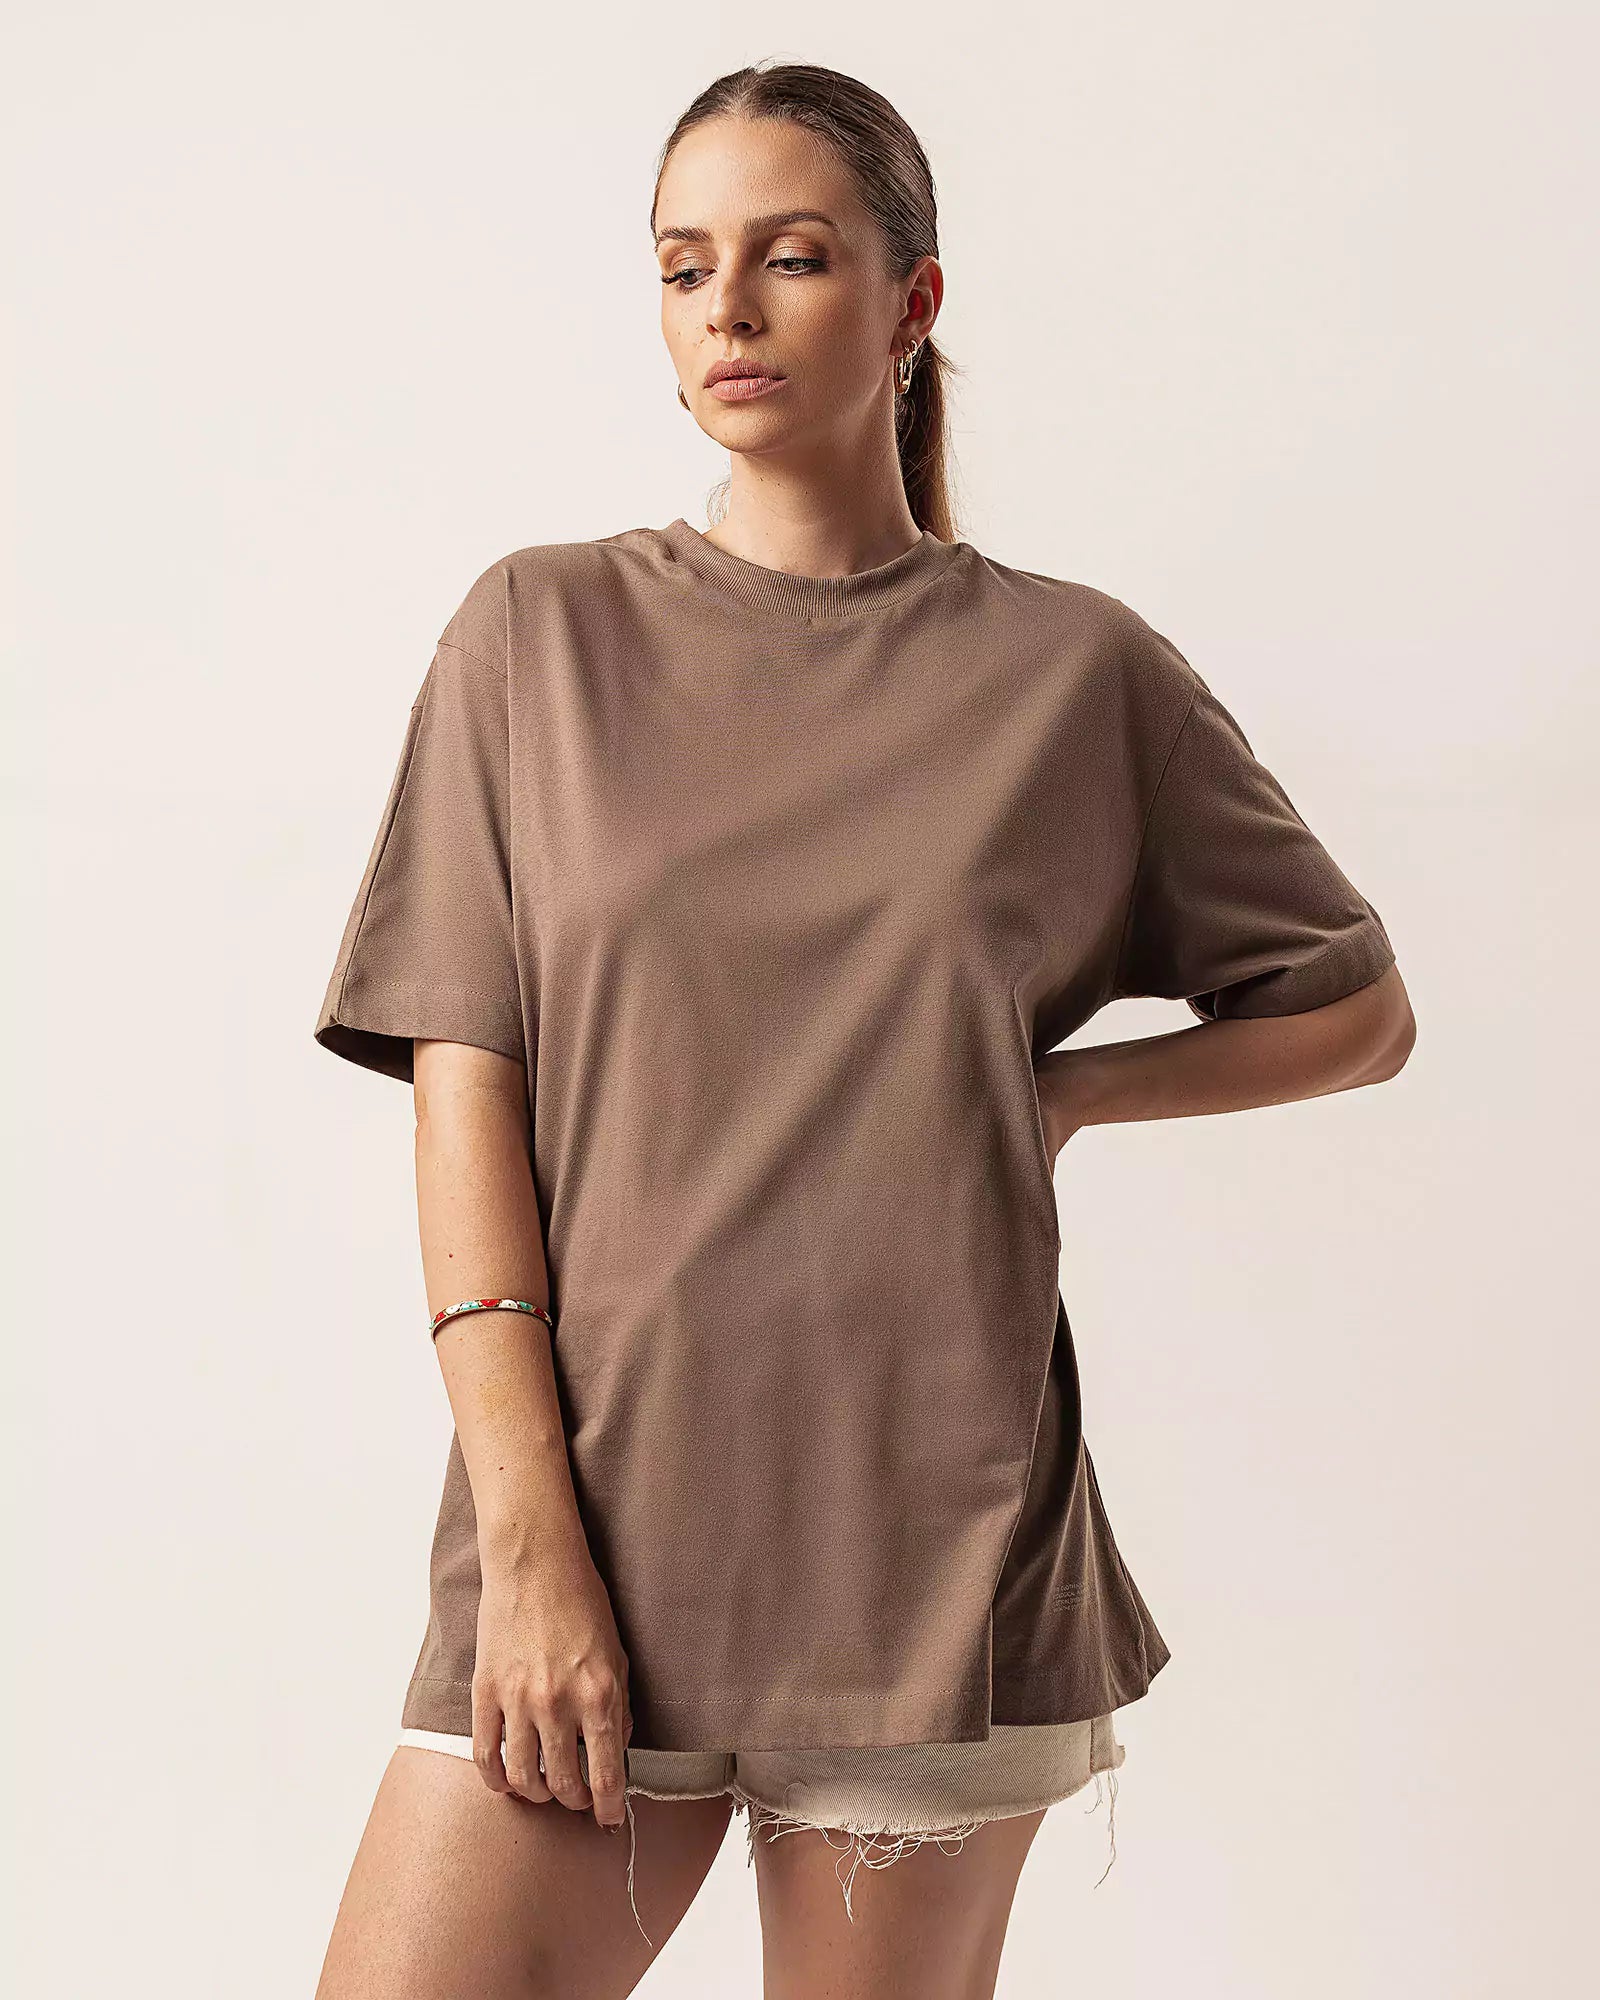 T-shirt Oversized de Algodão Orgânico Marrom. Compre online moda sustentável e atemporal na Minimadeia. Roupas femininas estilosas, básicas e sustentáveis. Foto produto 02